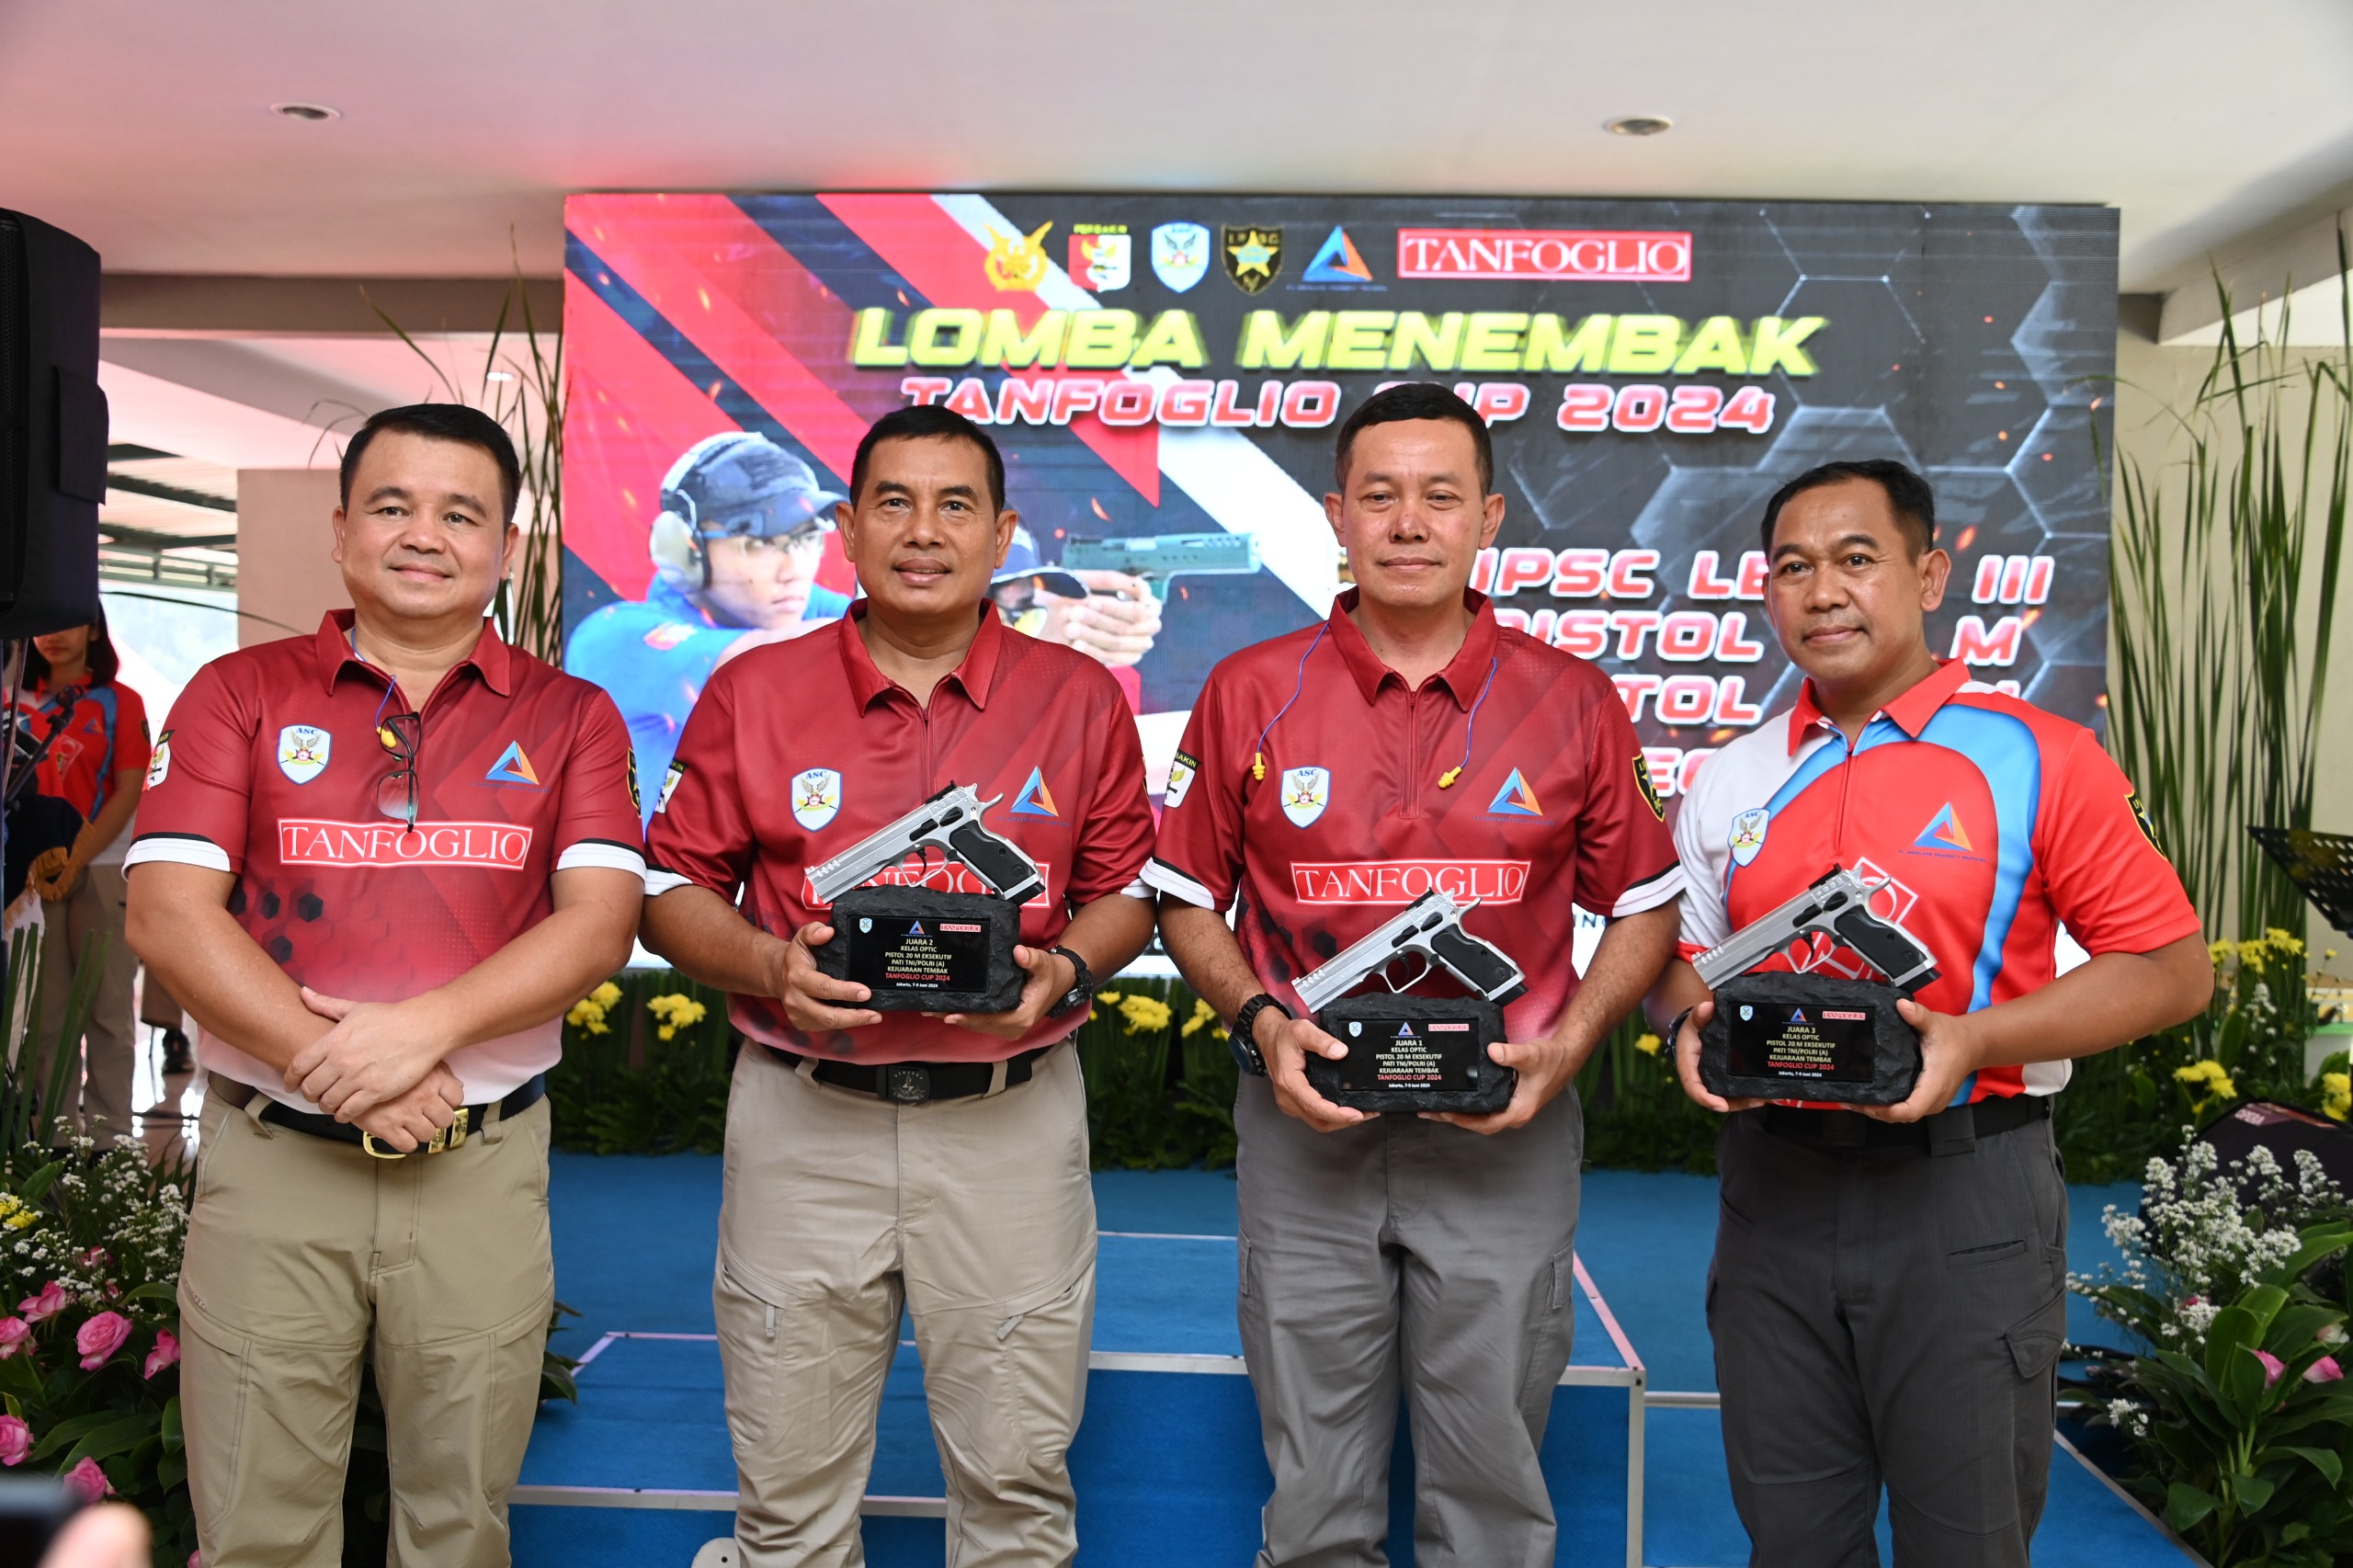 Dankomar Borong Juara Menembak Eksekutif Tanfoglio Cup